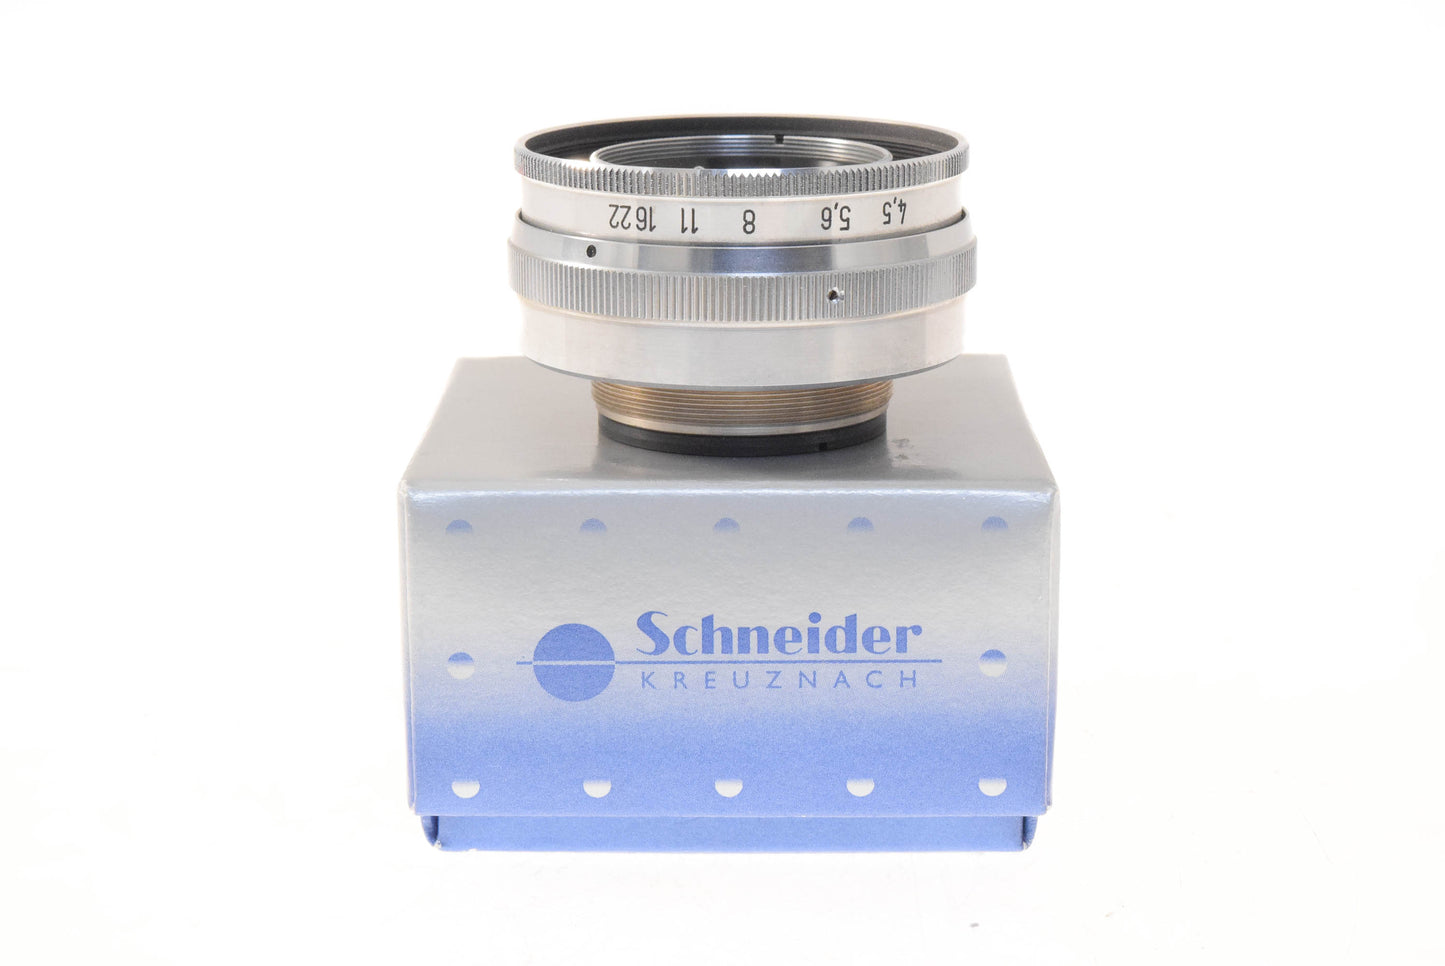 Schneider-Kreuznach 105mm f4.5 Componar - Lens